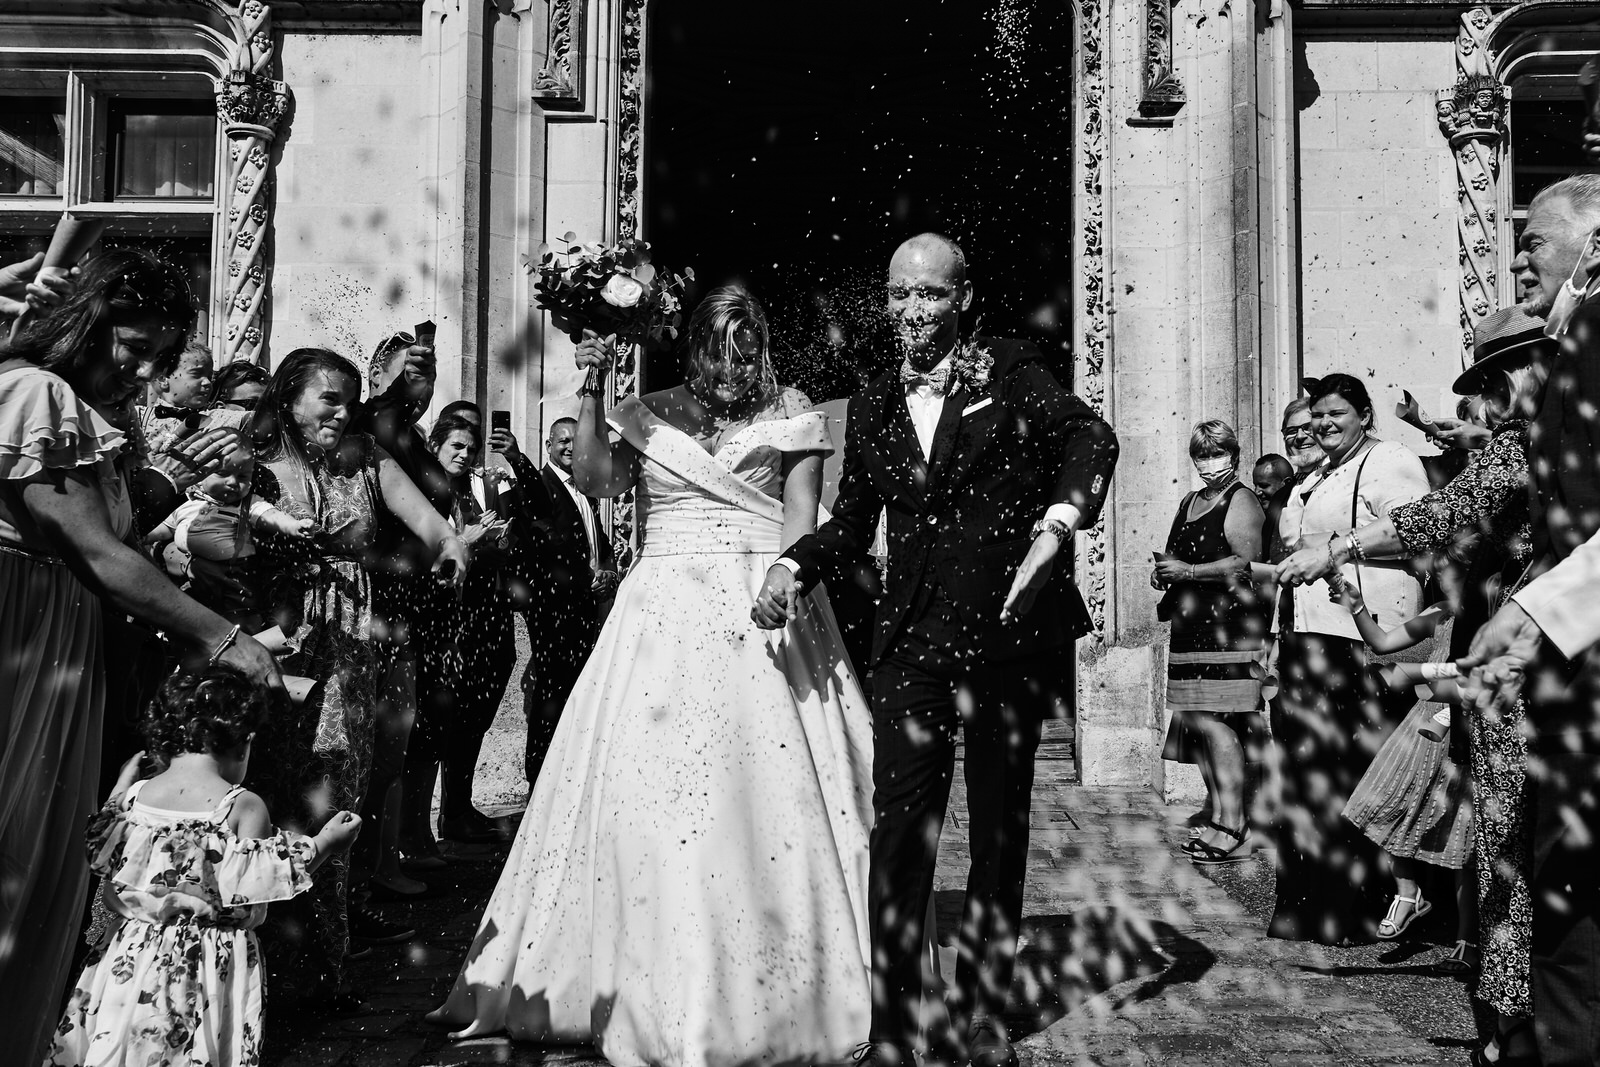 sortie de mairie, les invités lancent des pétales de fleurs sur les mariés